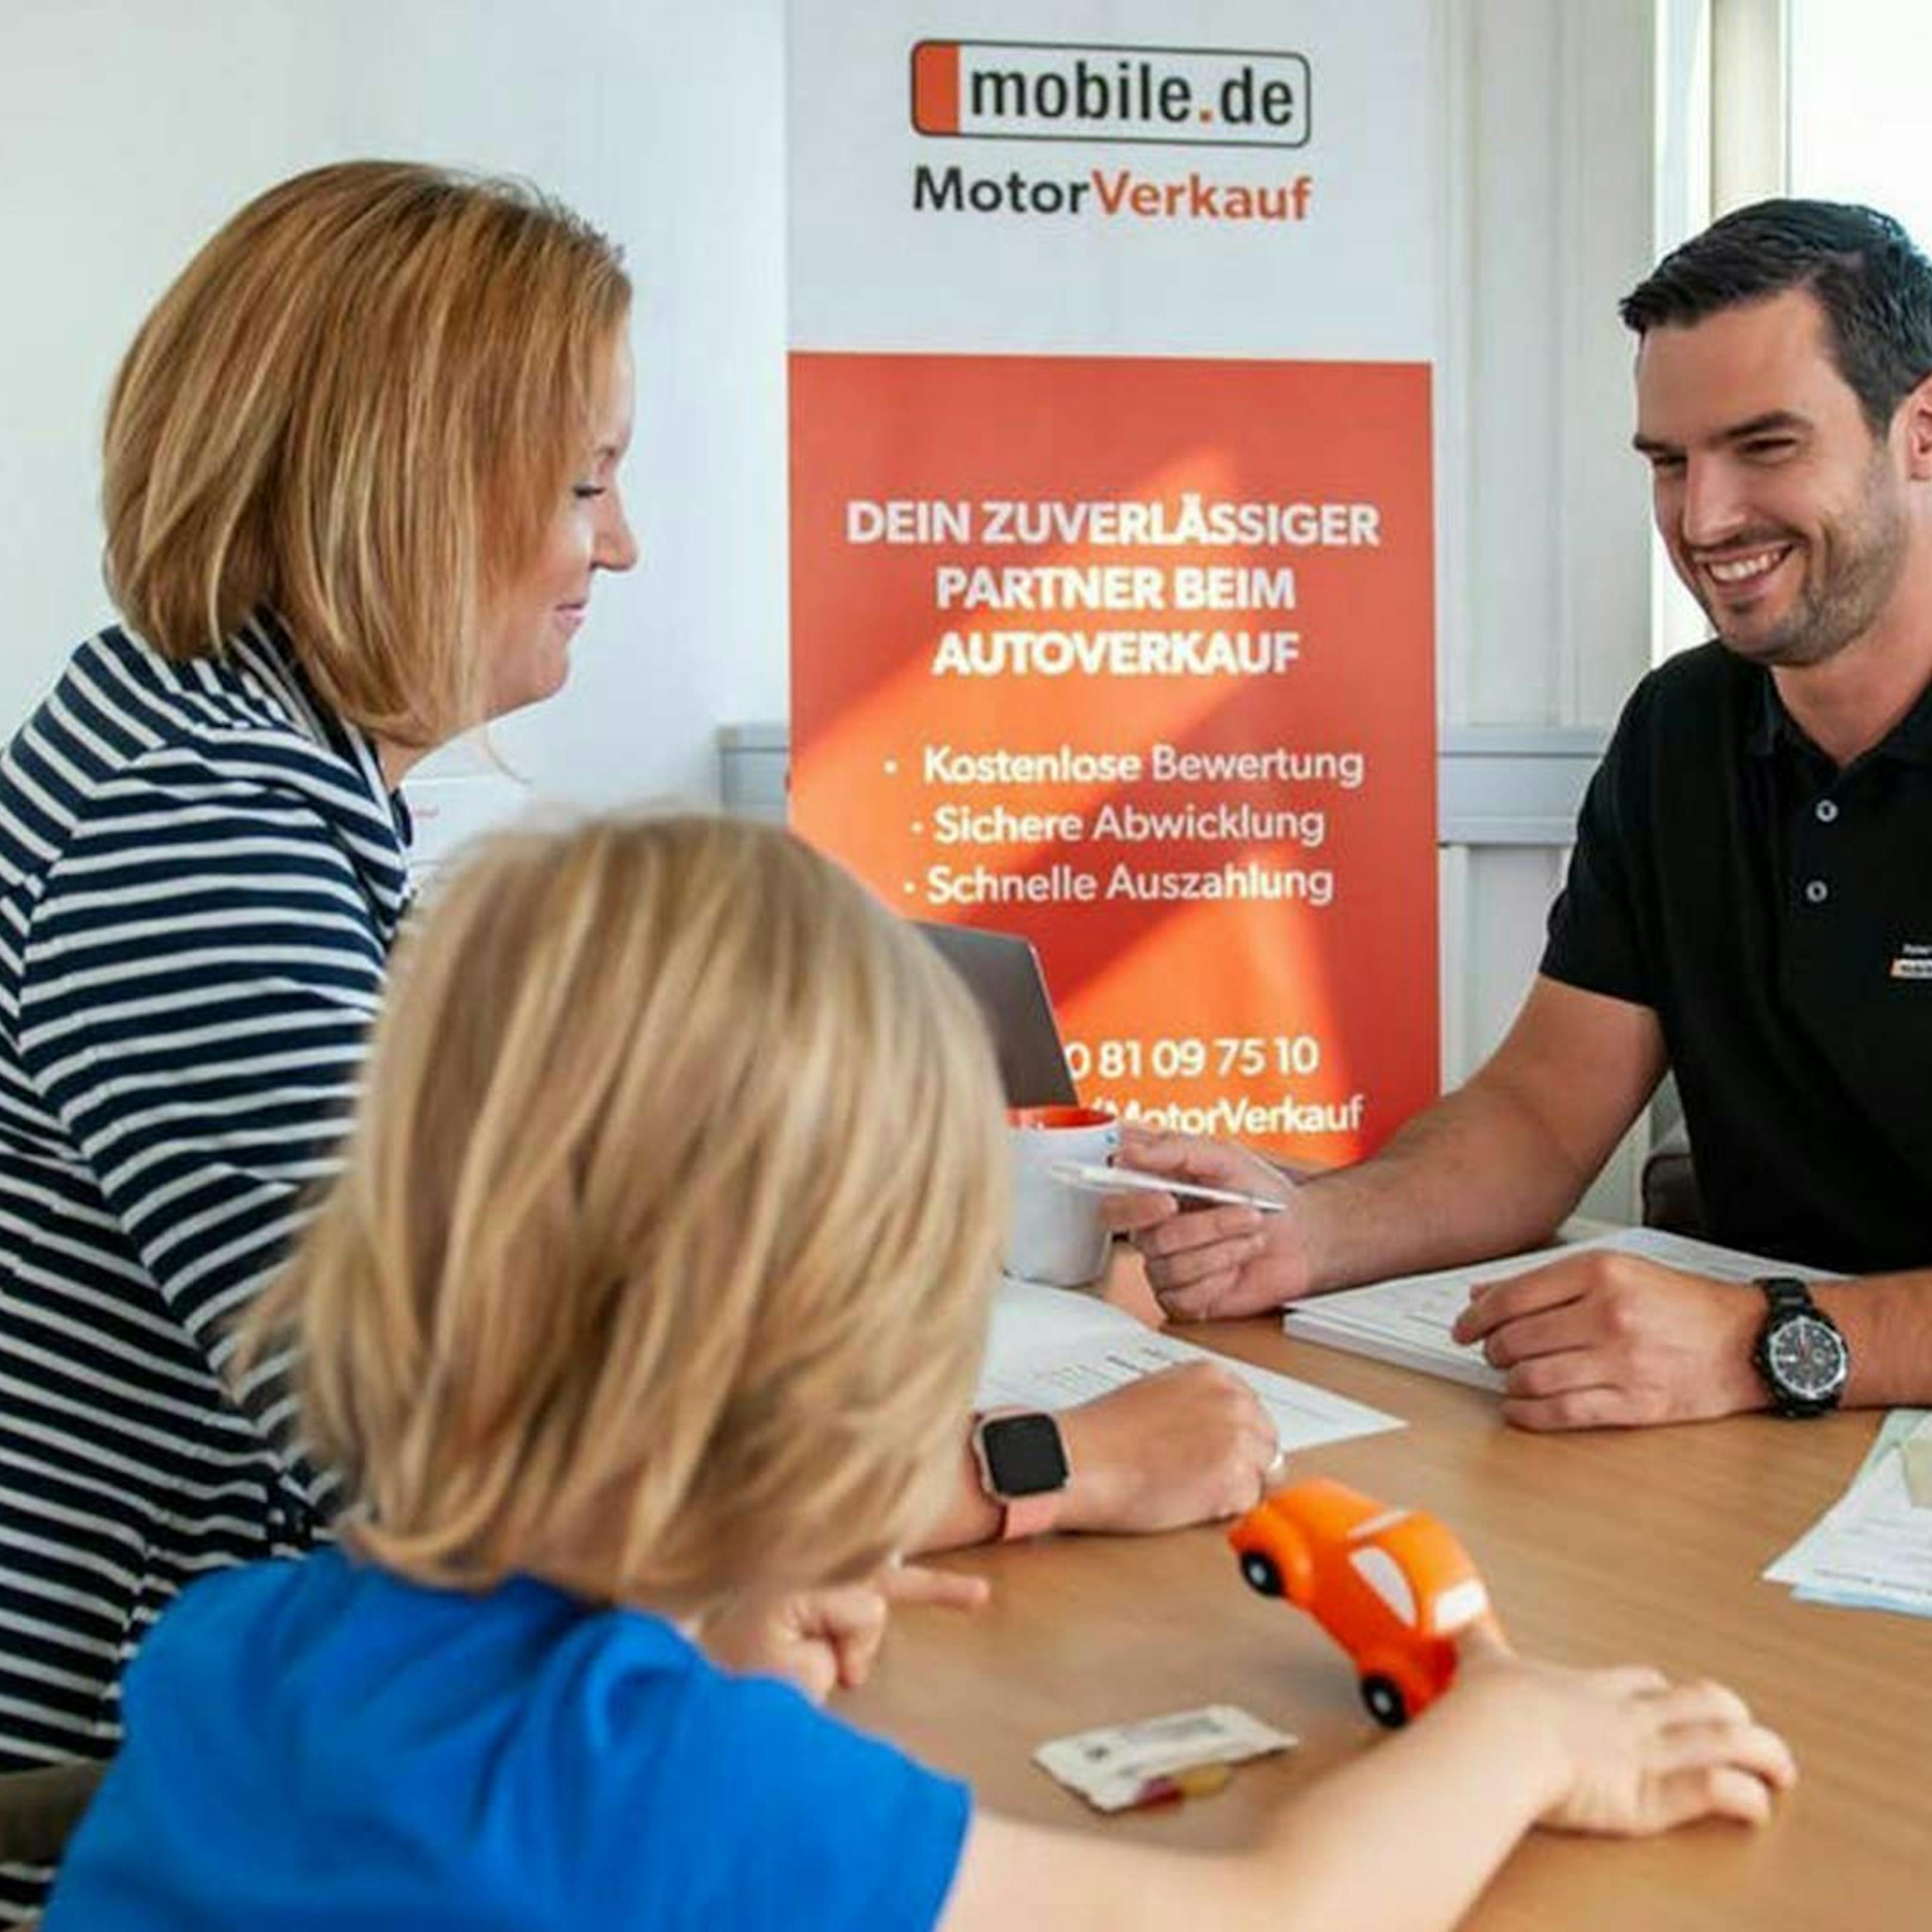 Eine Frau und ein Kind sitzen an einem Tisch und lassen sich zum Thema Autokauf-Preisverhandlung von einem mobile.de Mitarbeiter beraten.